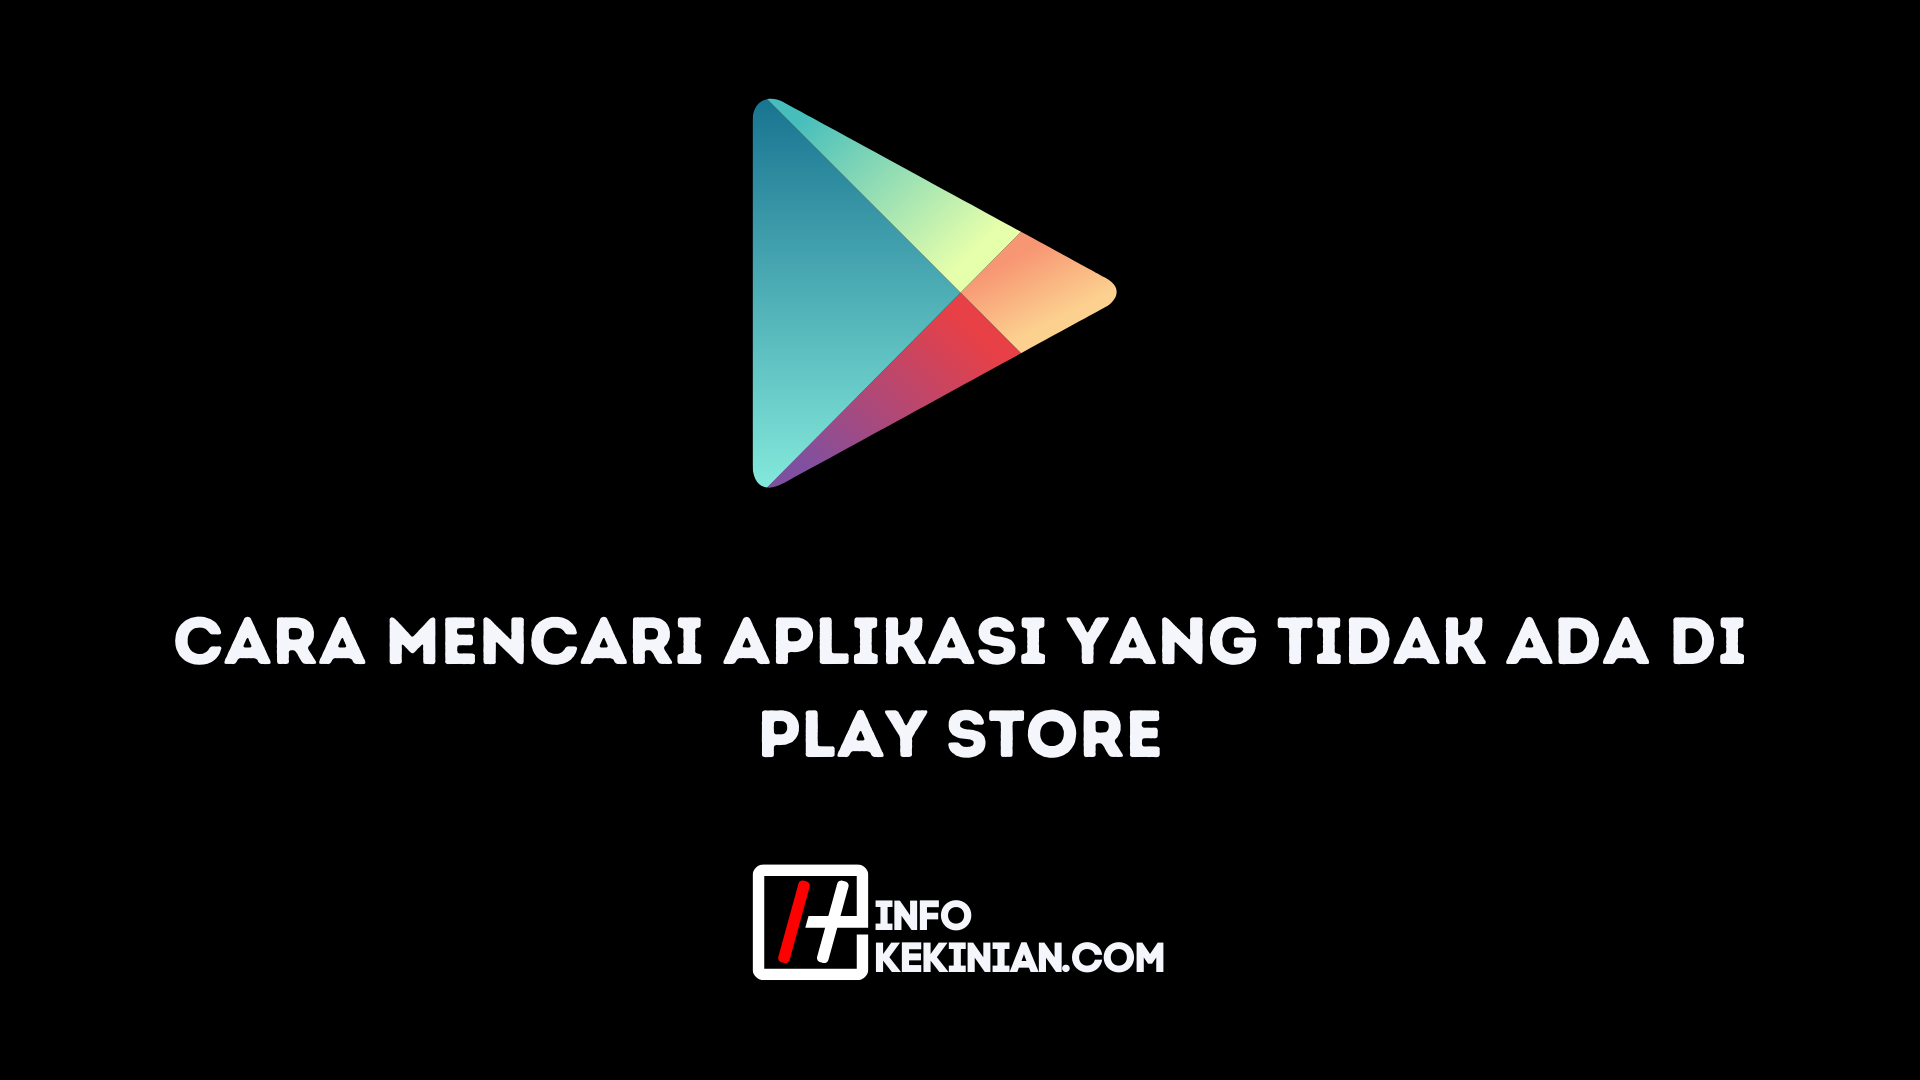 Terbaru download play store Cara Download